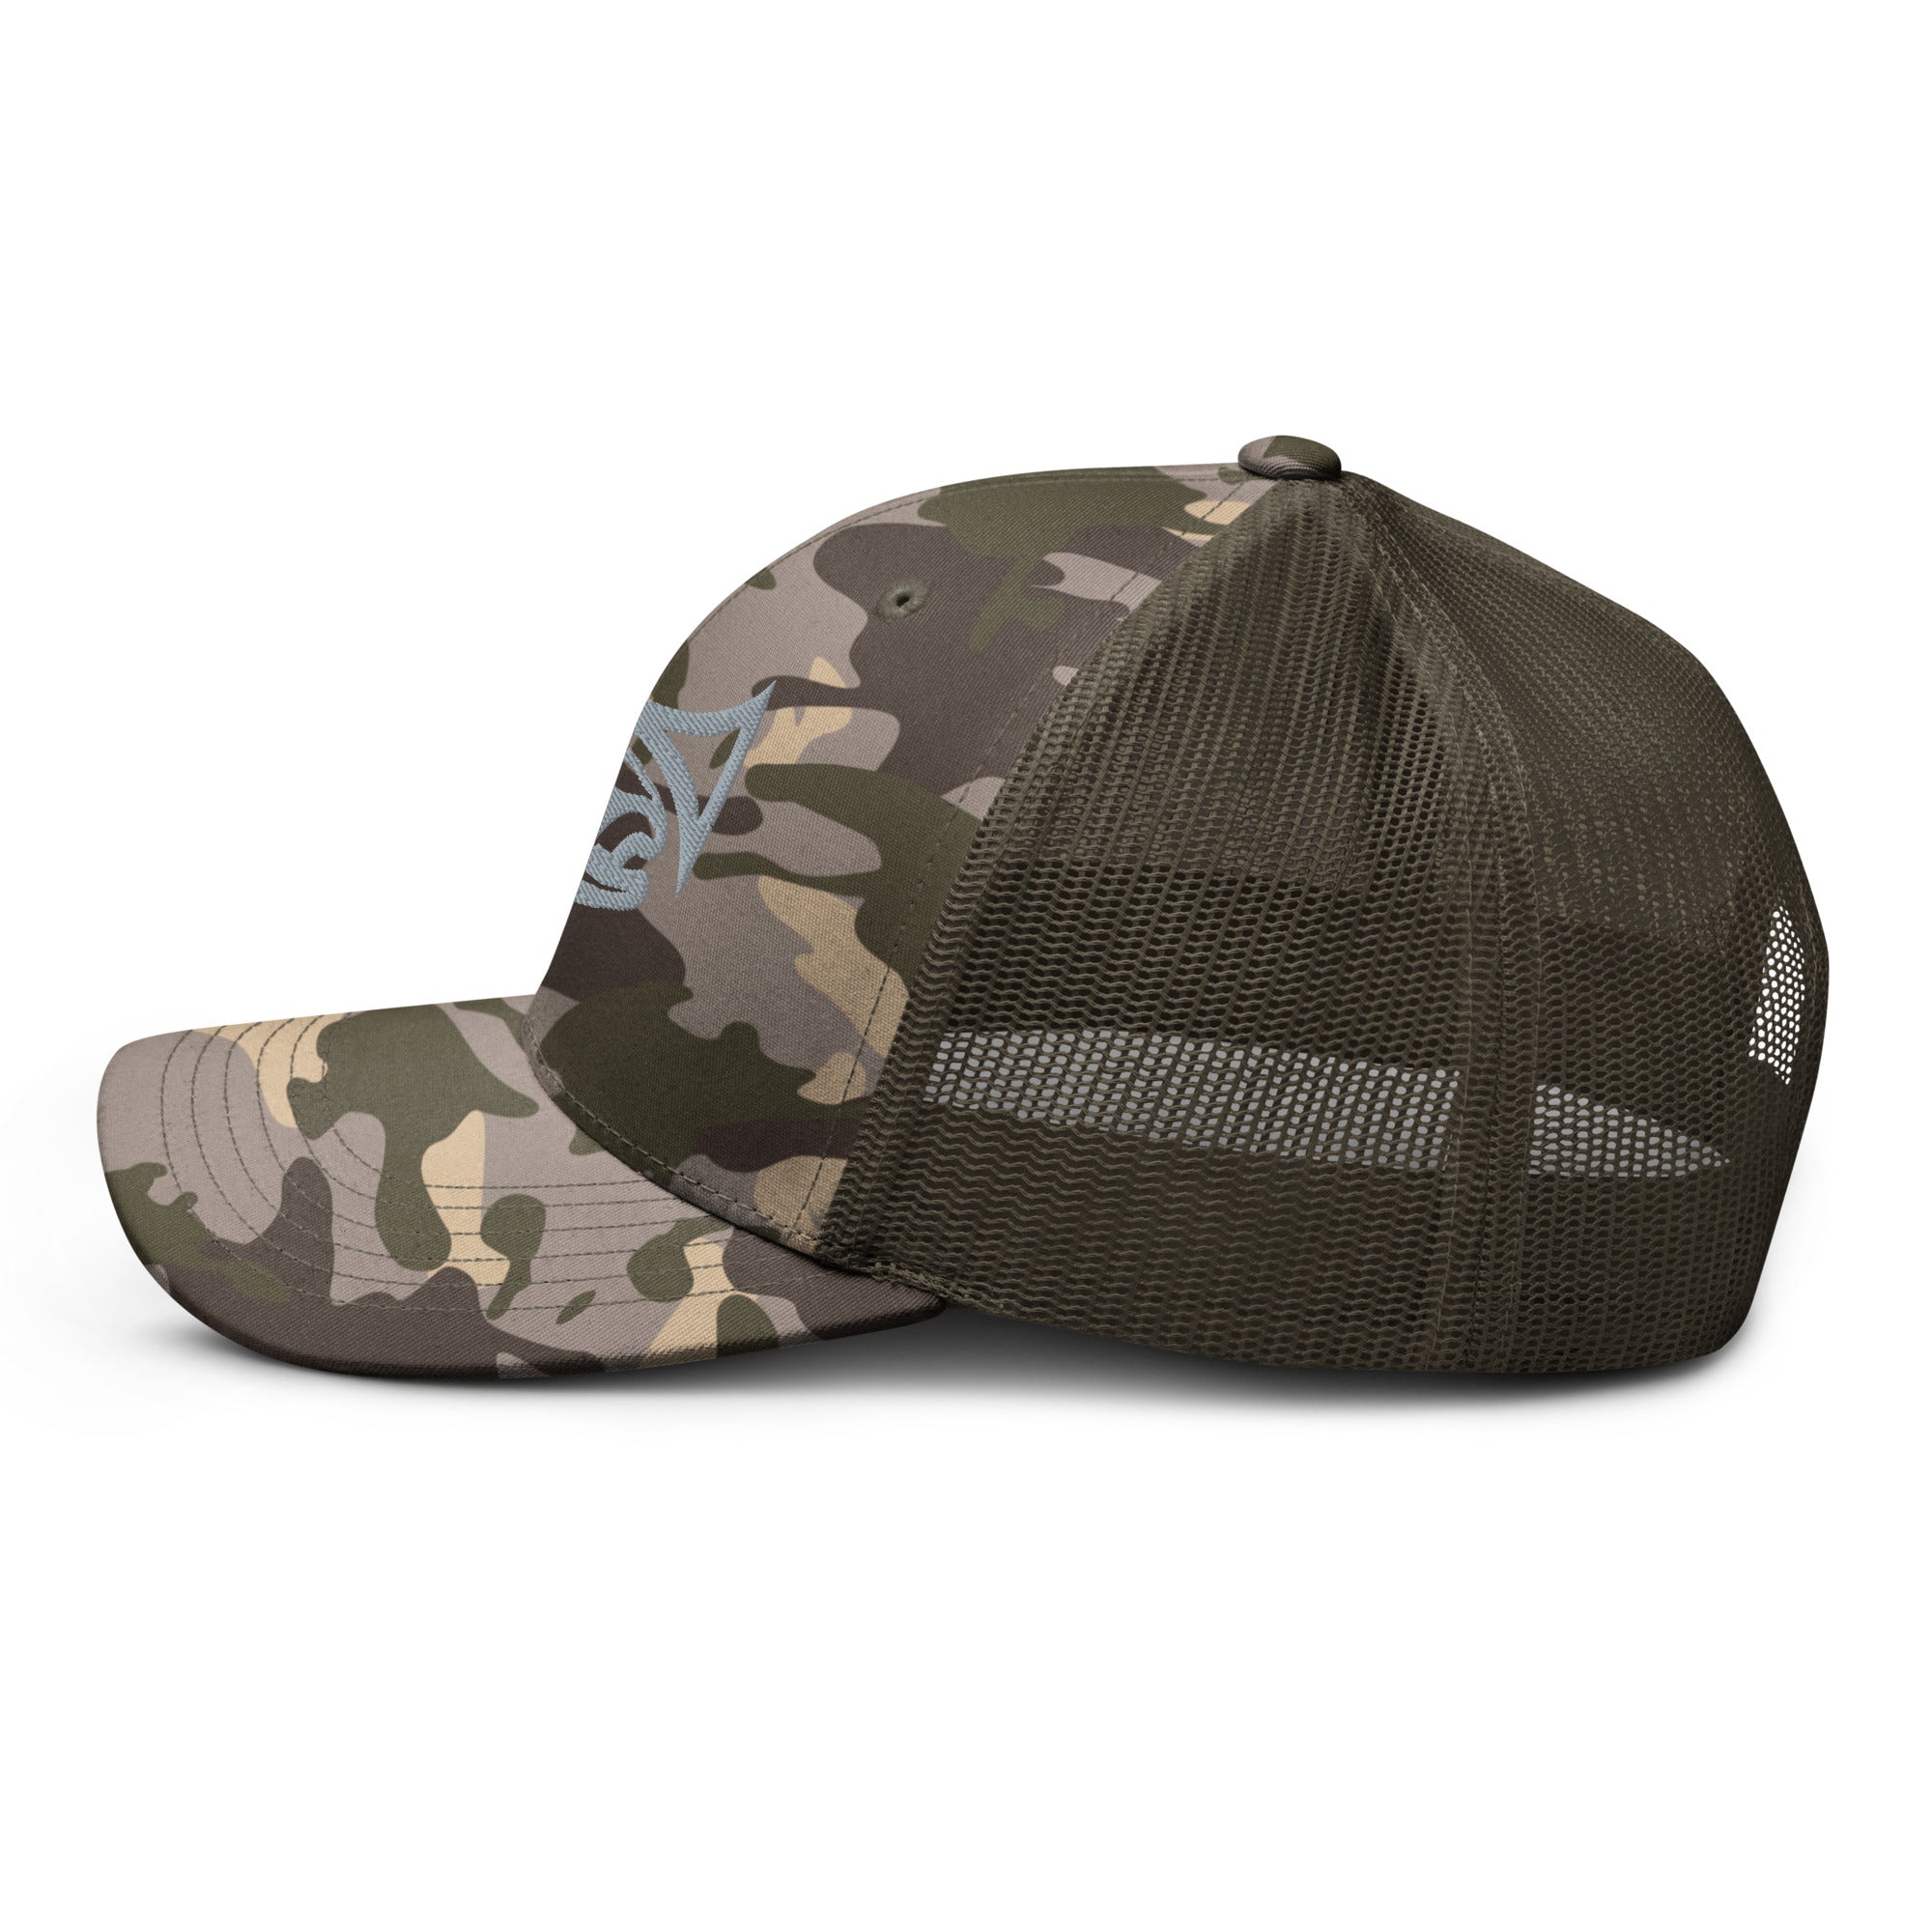 Drifthook Camouflage Trucker Hat - Multi-Terrain